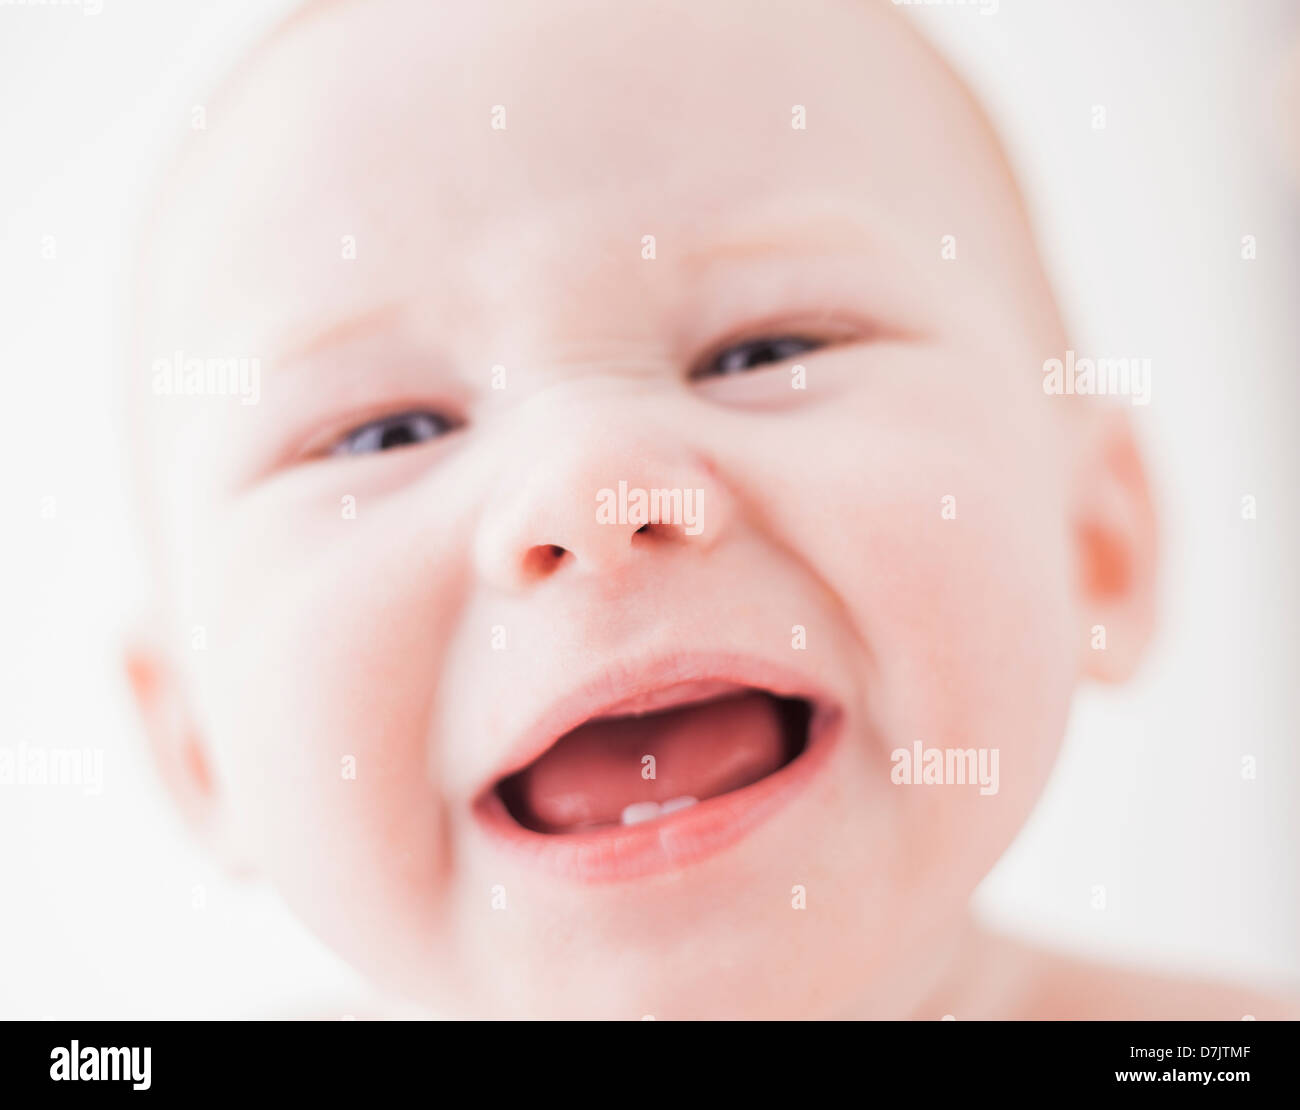 Foto de estudio retrato de Baby Boy (18-23 meses) con la boca abierta Foto de stock